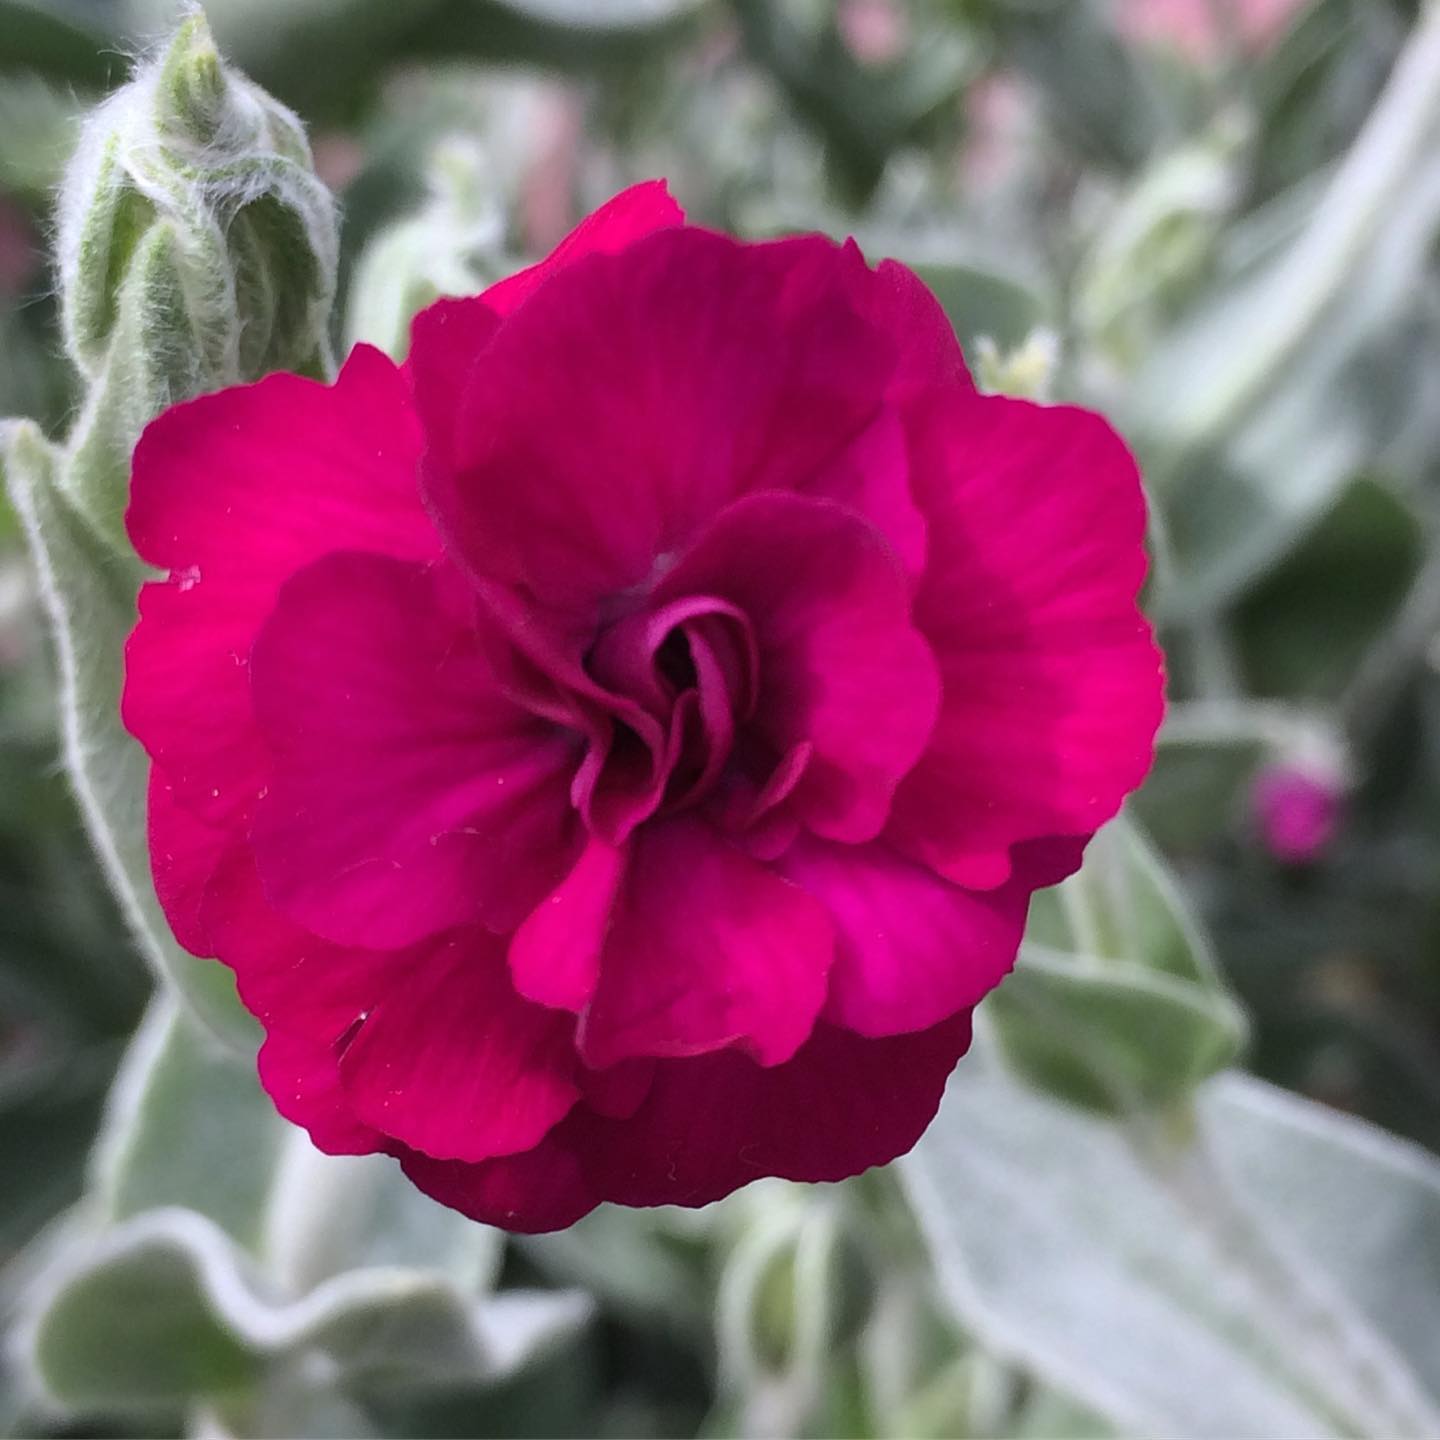 Lychnis Coronaria 'Gardeners' World' - Gardeners' World Rose Campion